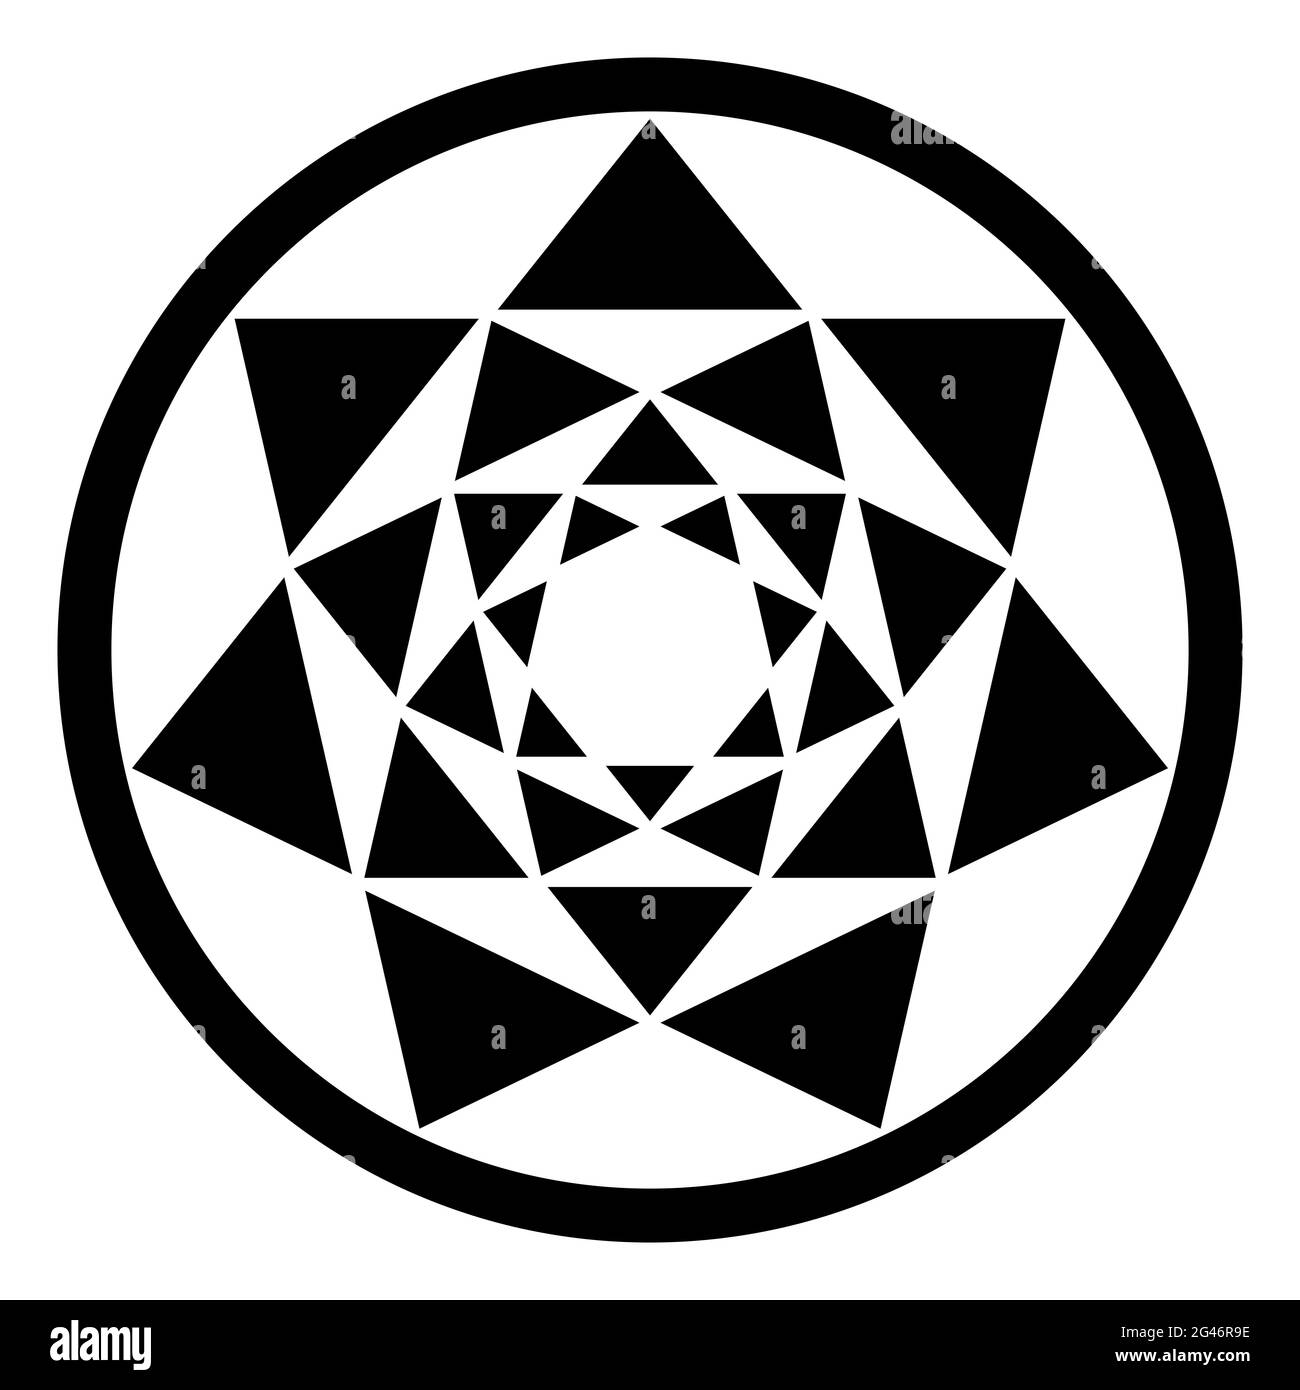 Vier Heptagramme und ihre resultierenden Dreiecksmuster in einem Kreisrahmen. Kreuzungspunkte von vier siebenzackigen Sternen, einer in den anderen platziert. Stockfoto